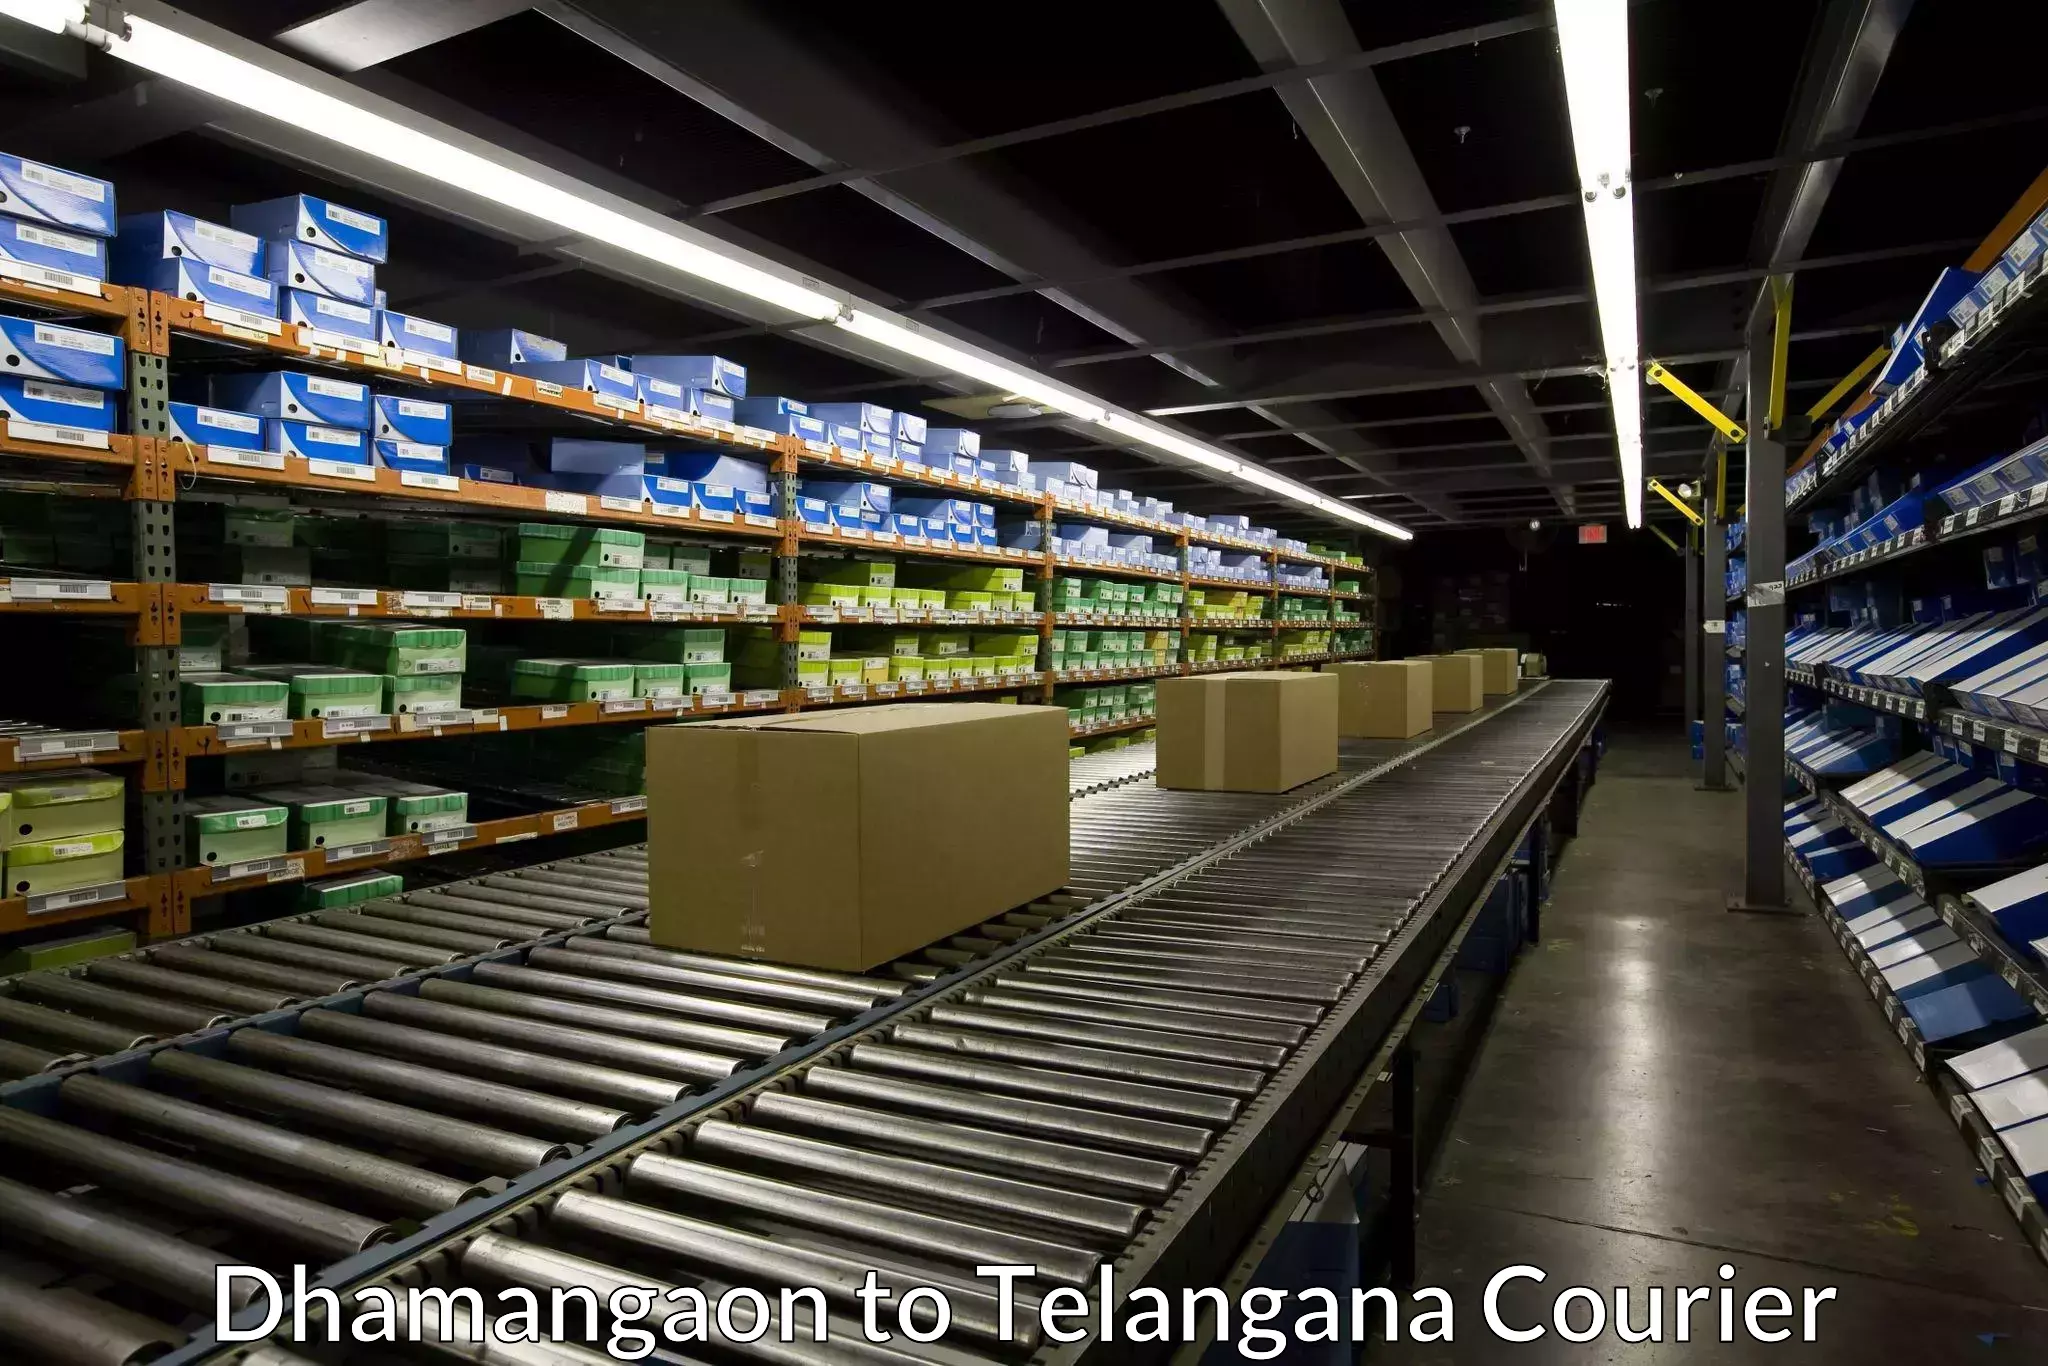 High-capacity parcel service Dhamangaon to Yerrupalem